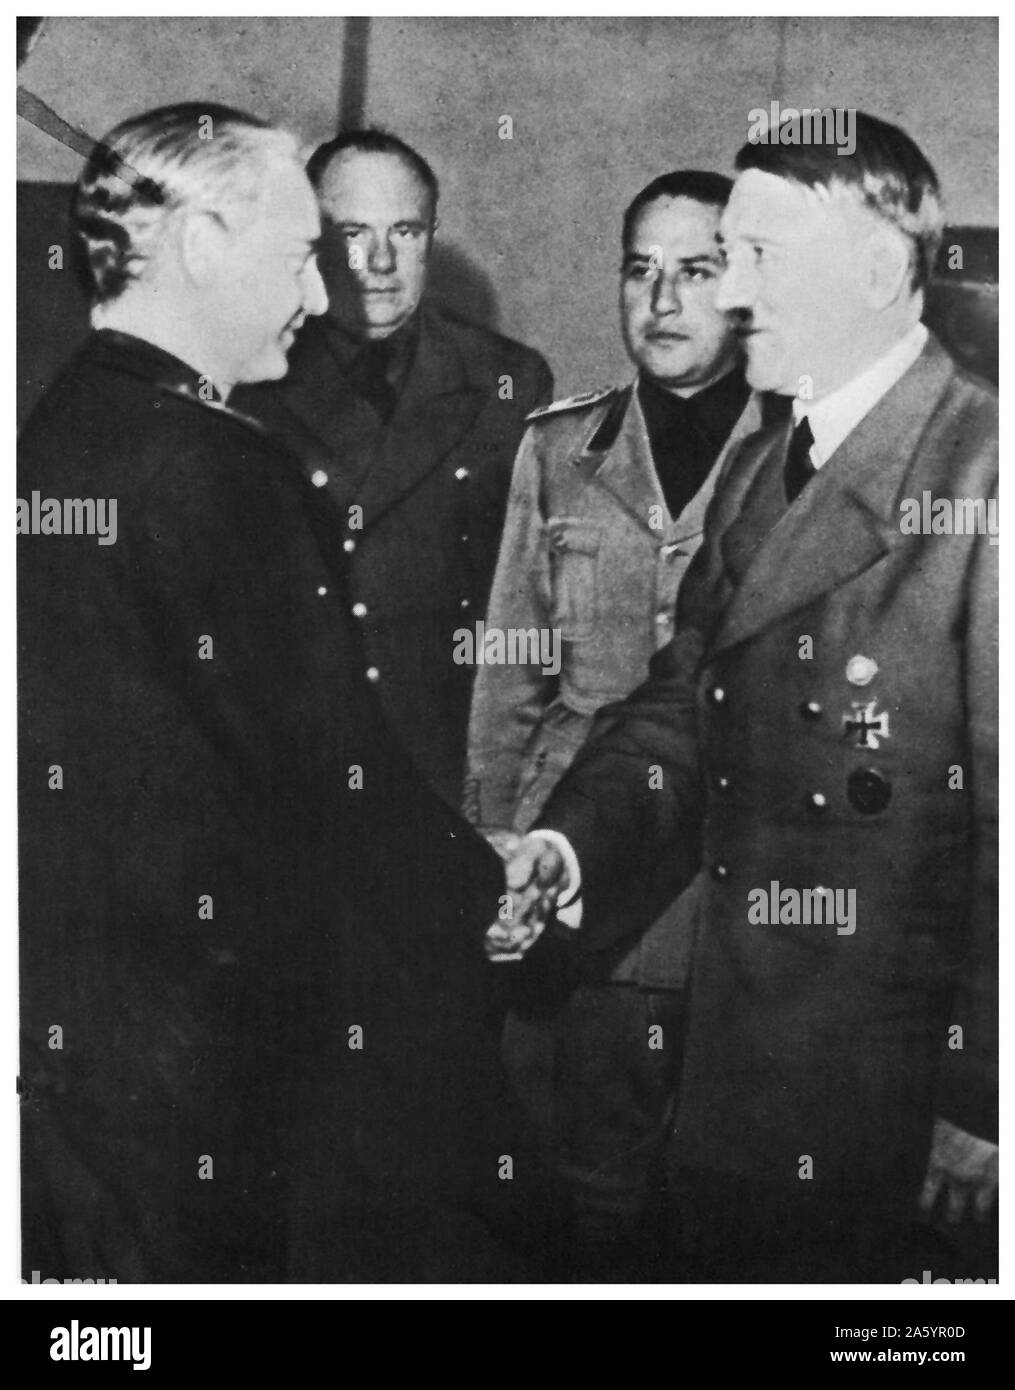 En octobre 1940, Serrano Suñer, le Ministre espagnol des affaires étrangères a rencontré le leader allemand, Adolf Hitler, dans le sud de la France (Hendaye) pour discuter de l'Espagne ayant participer à la Seconde Guerre mondiale Banque D'Images